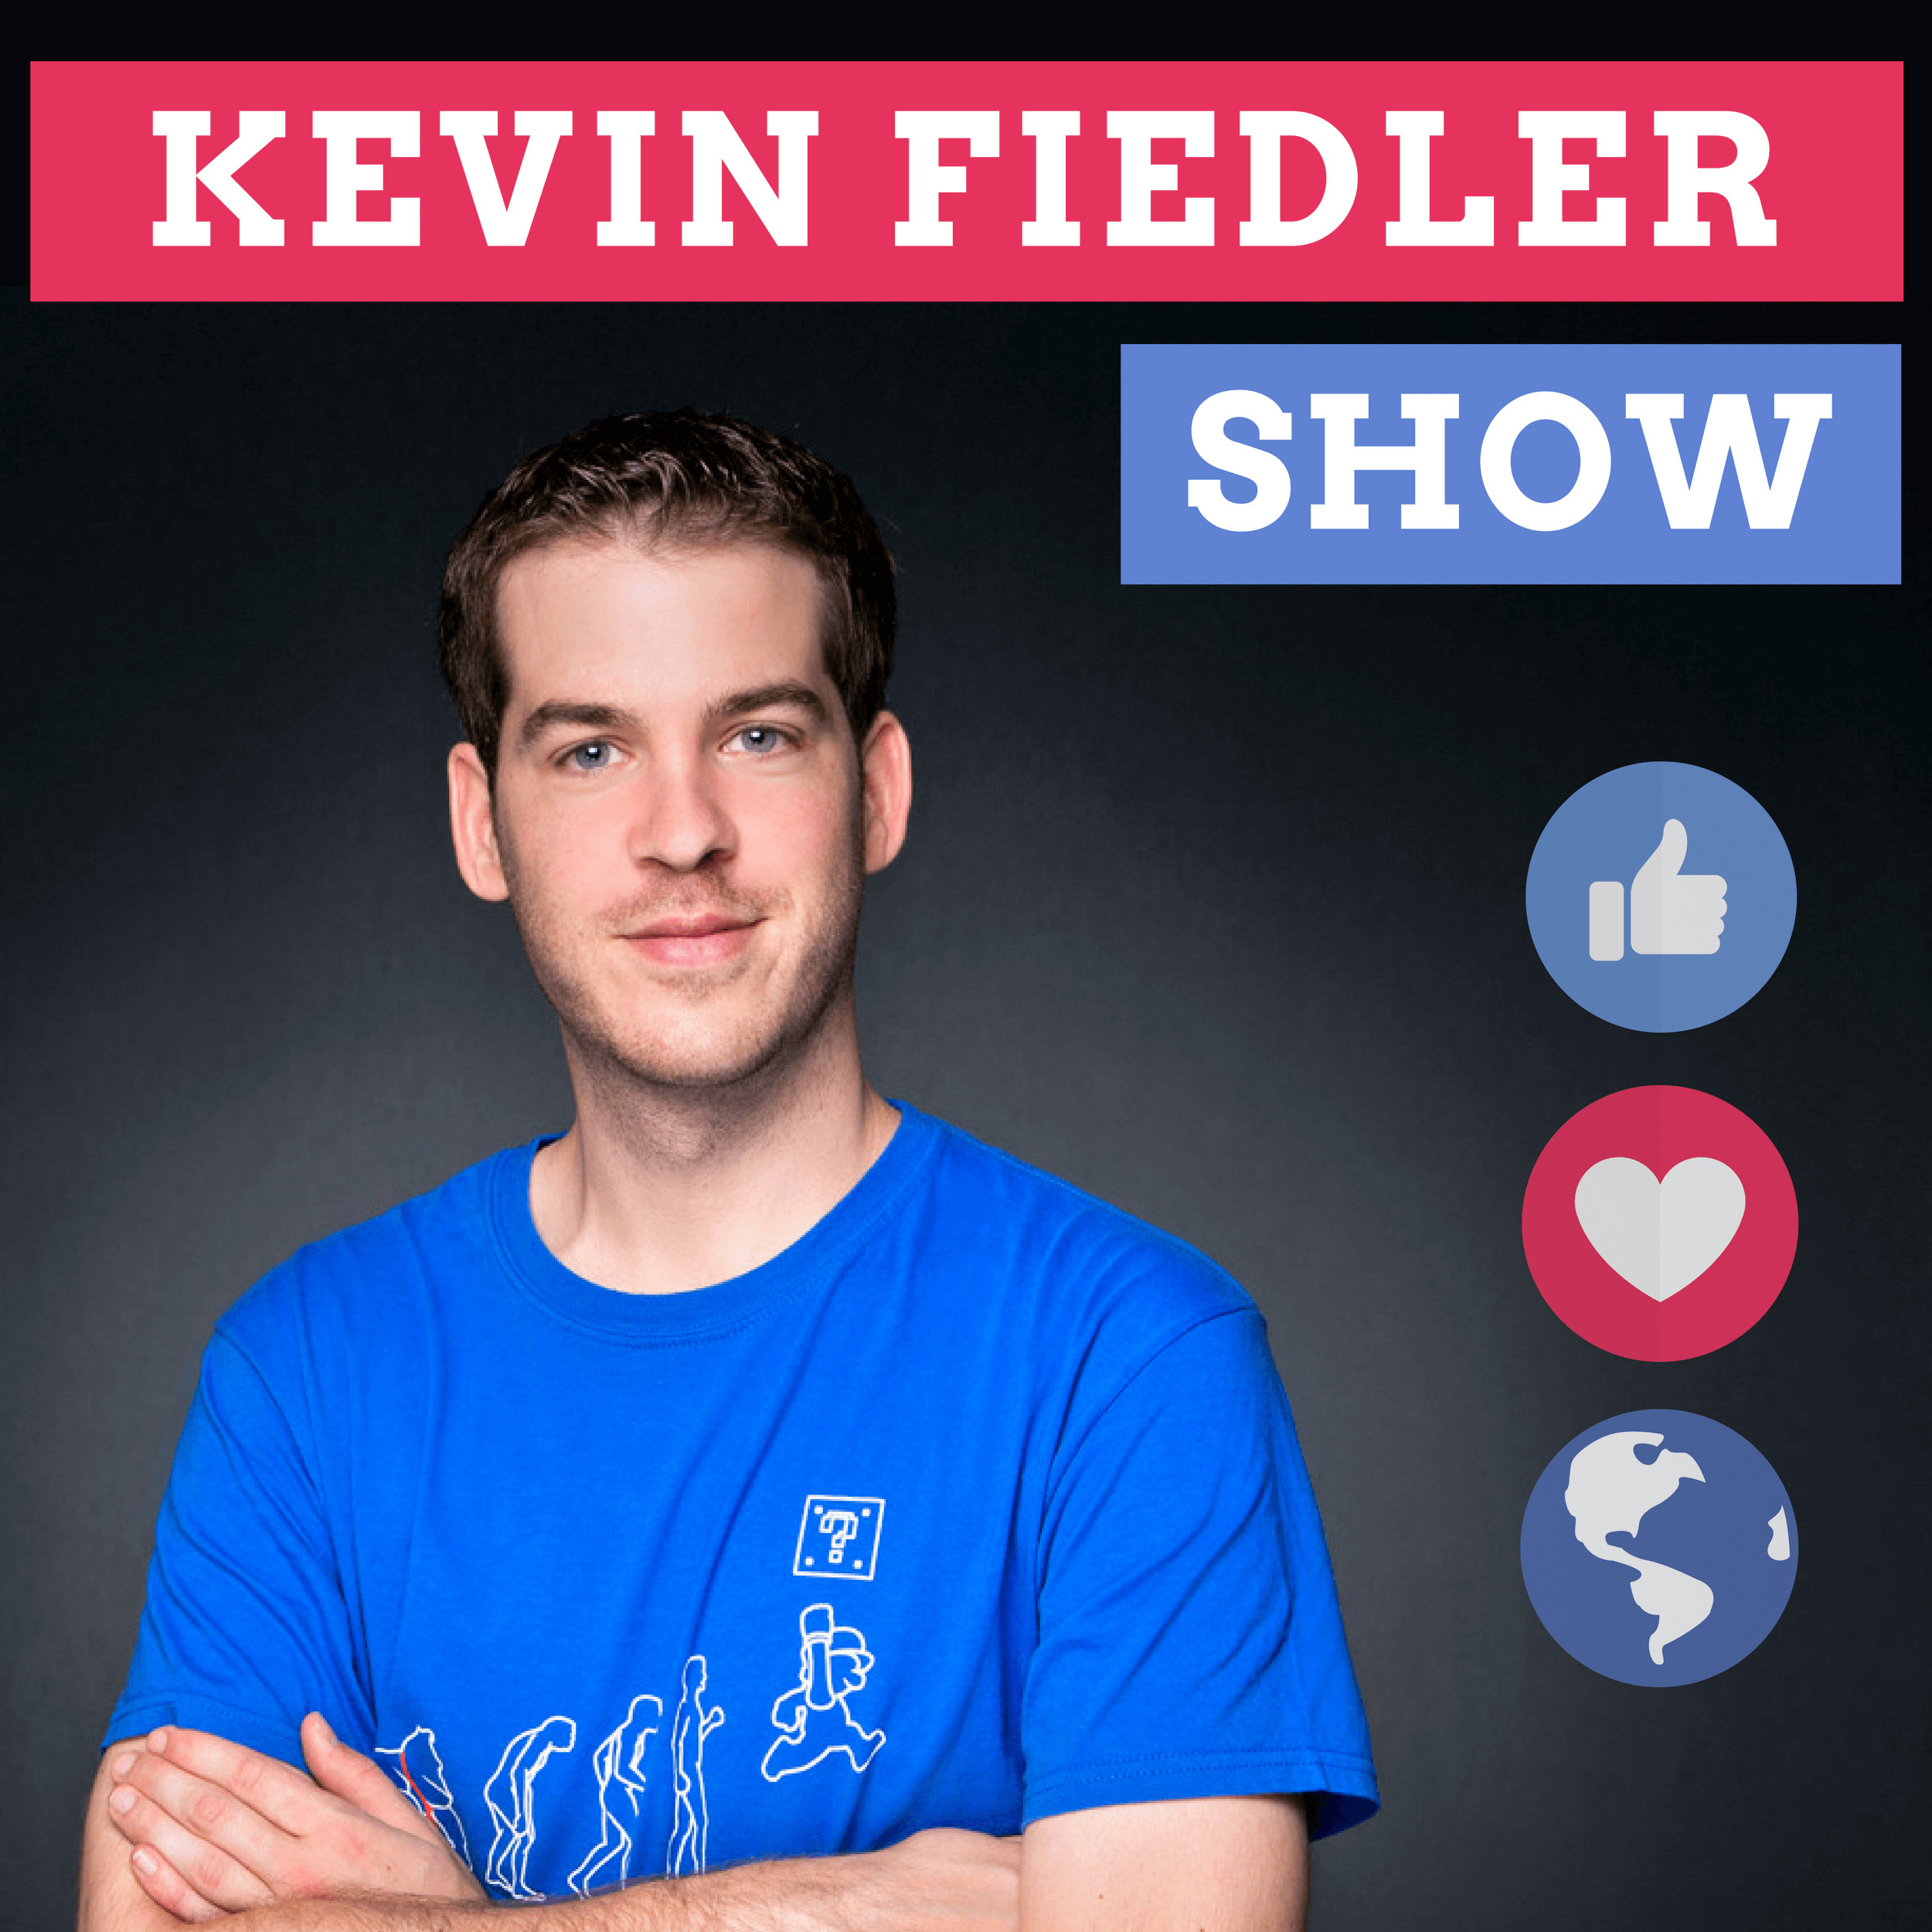 Kevin Fiedler Show - Online Business, Online Marketing, Produktivität und mehr